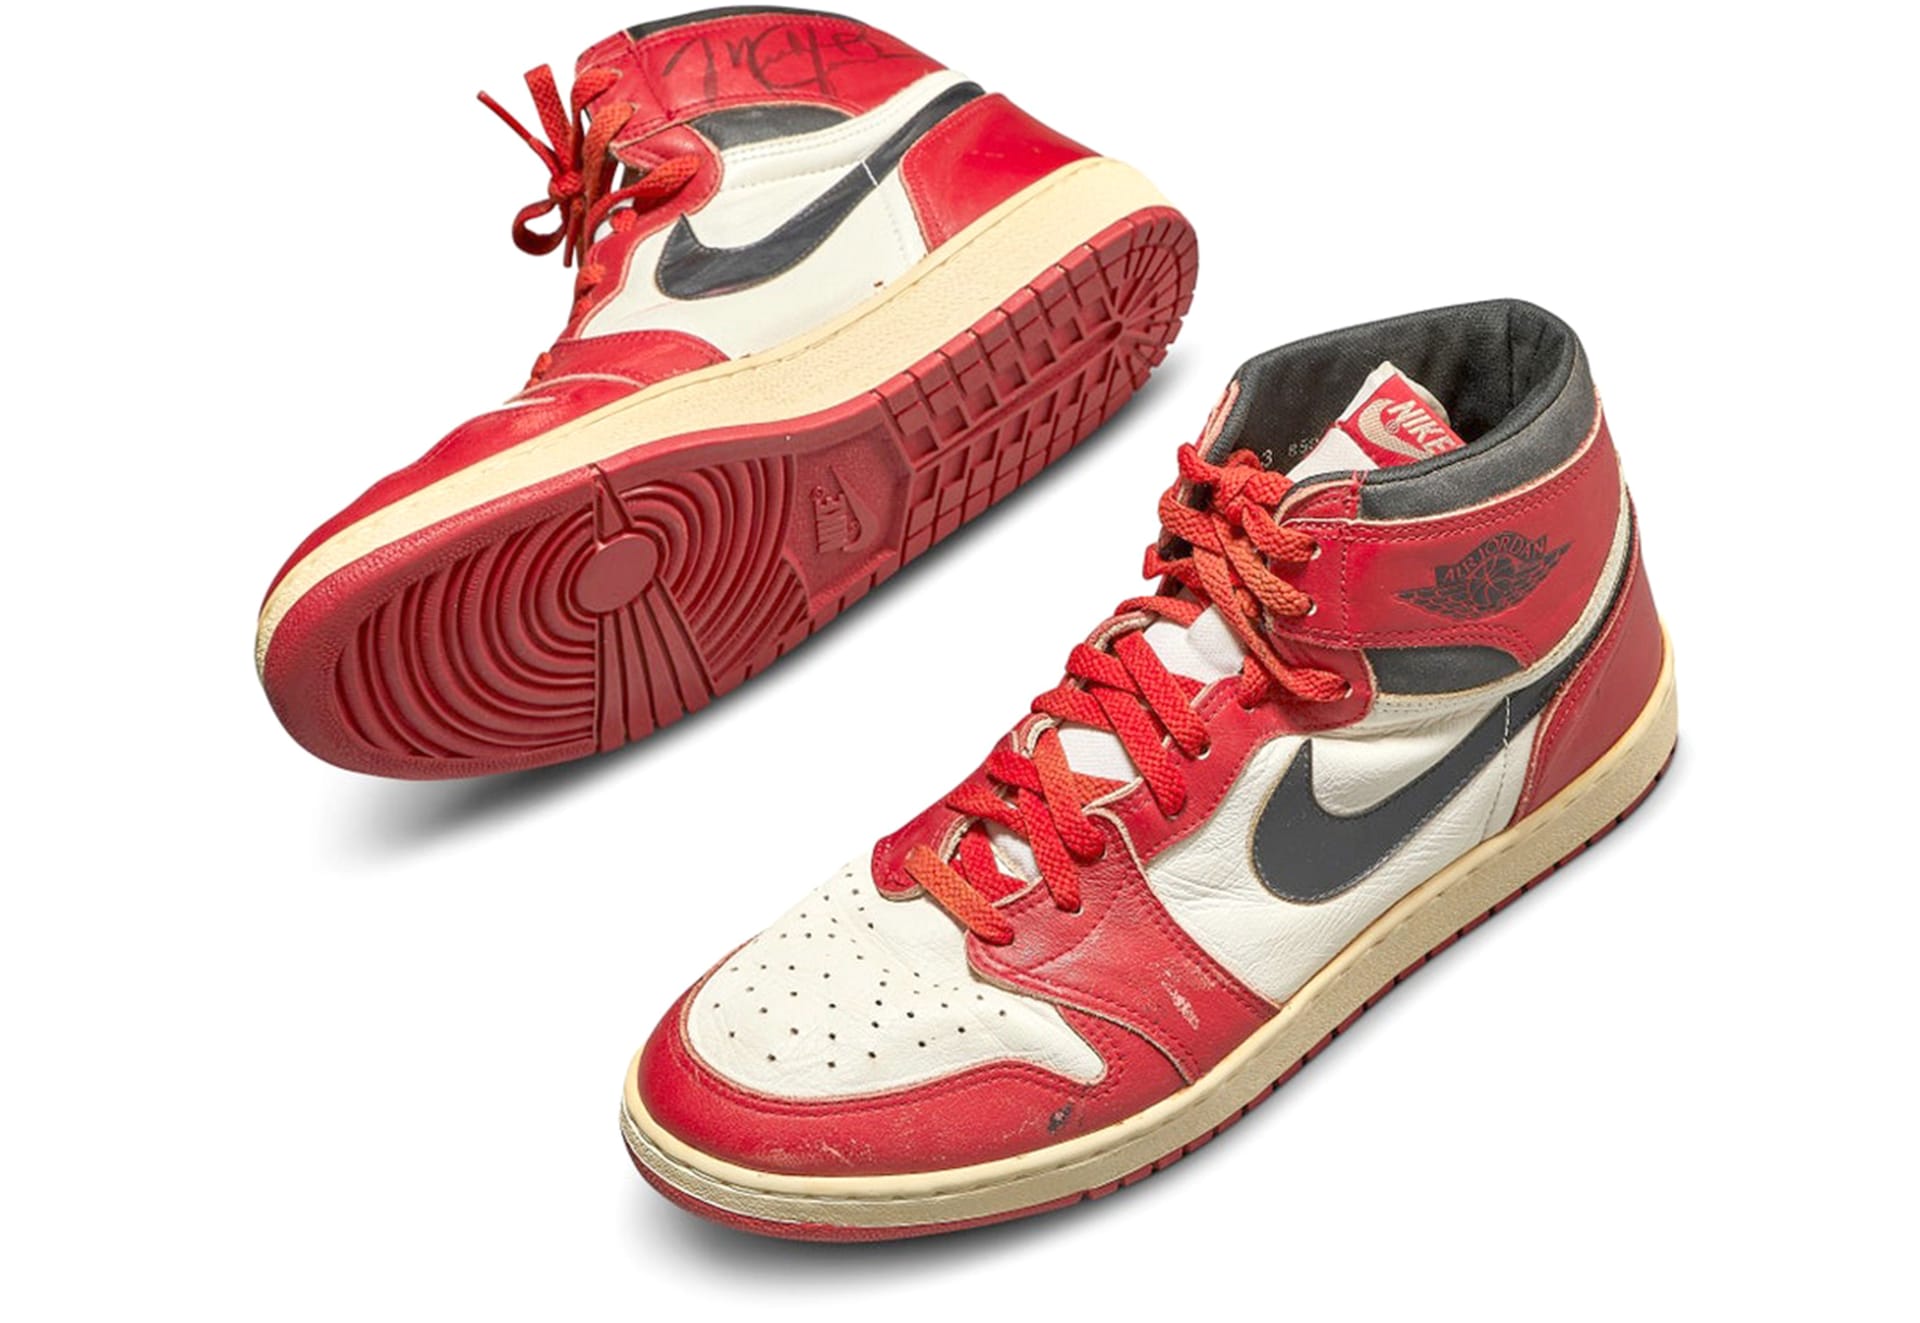 Tenisky, které obul v některém ze zápasů Michael Jordan, se v aukcích prodávají za statisíce dolarů. Takto vypadají jedny z prvních po uzavření smlouvy s firmou Nike.